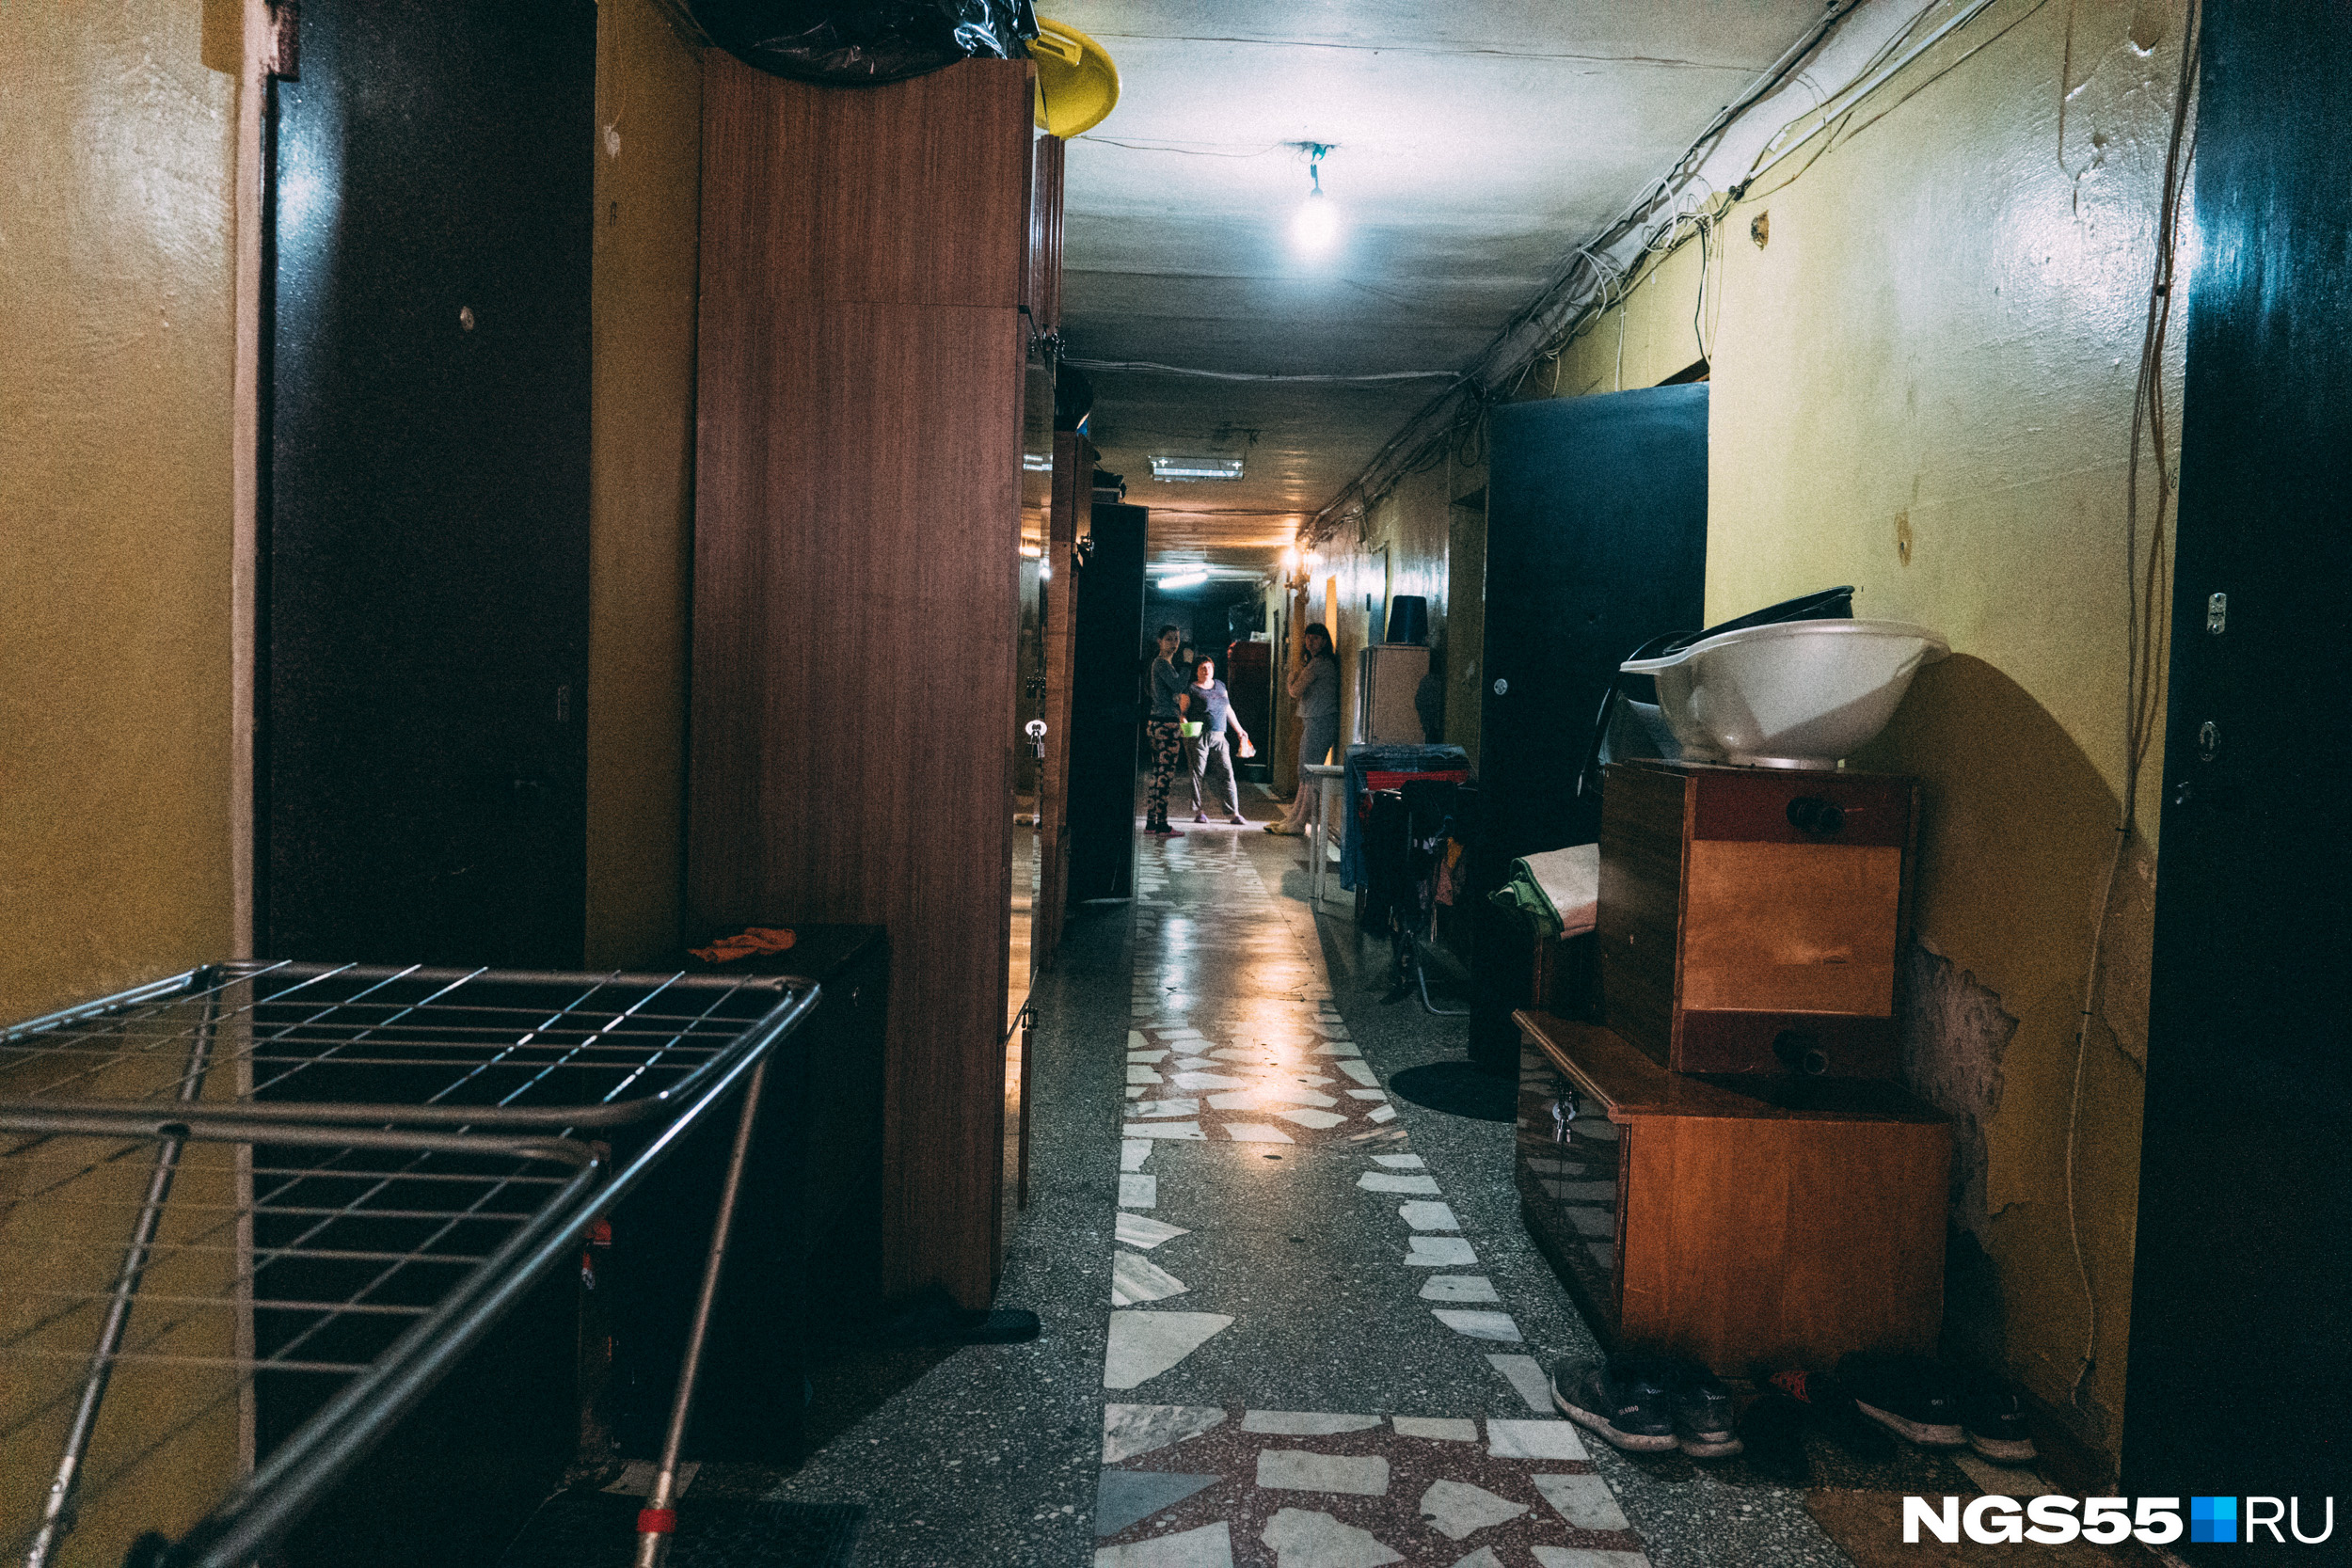 Коридоры заставлены шкафами, как это бывает в общежитиях и коммуналках